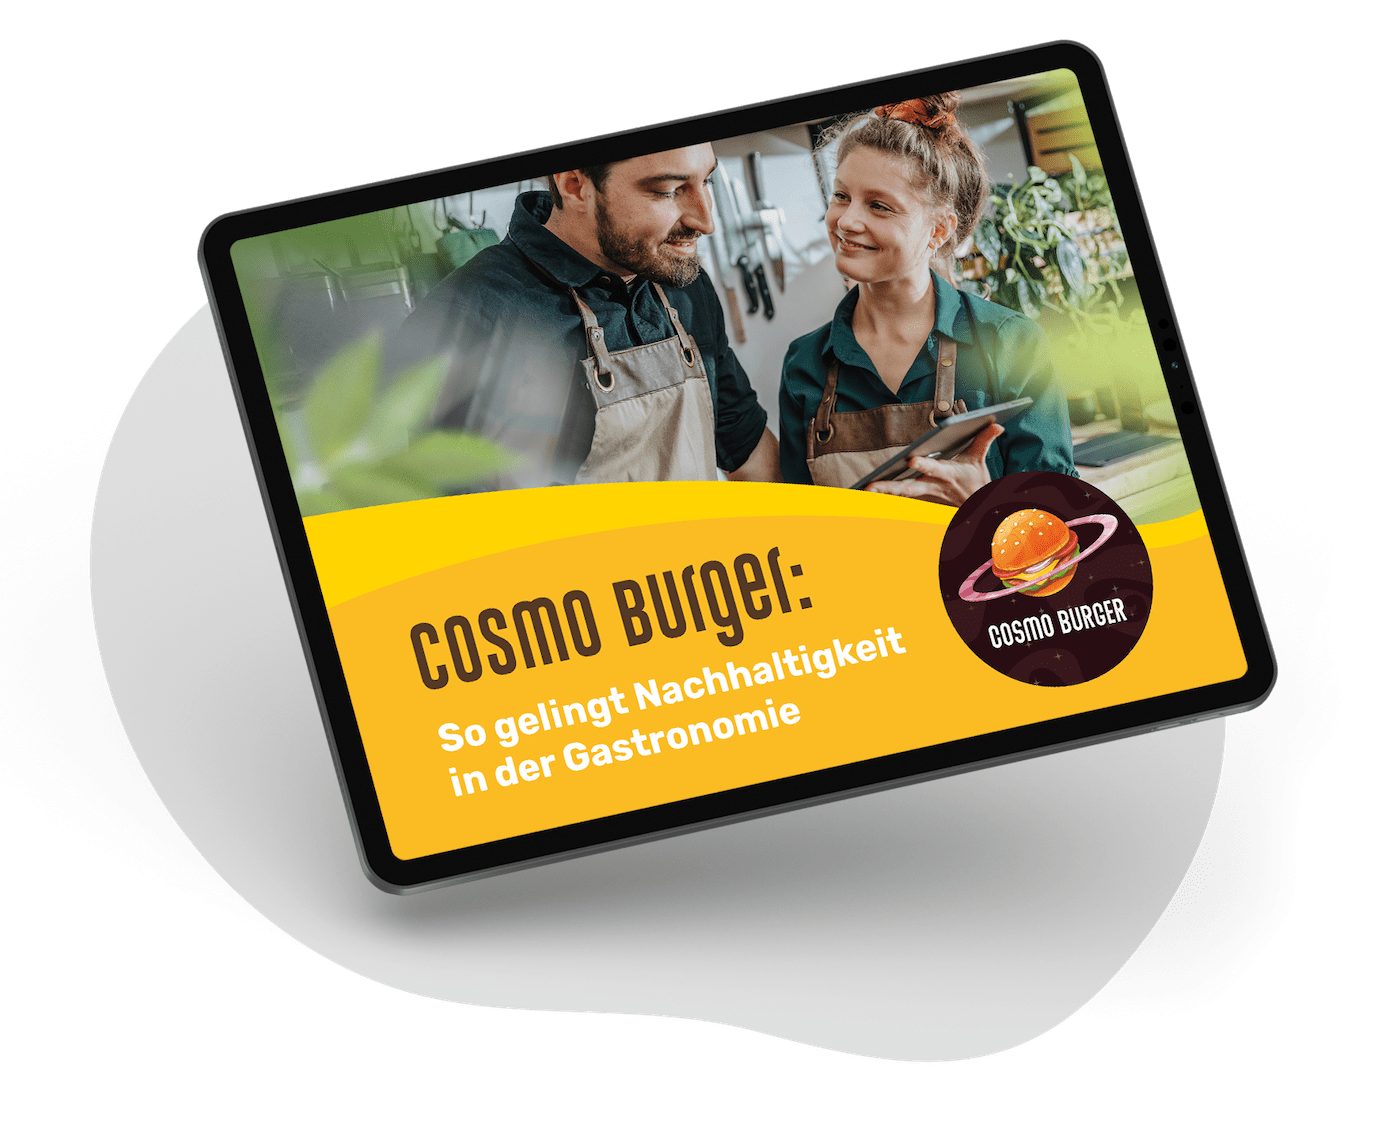 Cosmo Burger: So gelingt Nachhaltigkeit in der Gastronomie